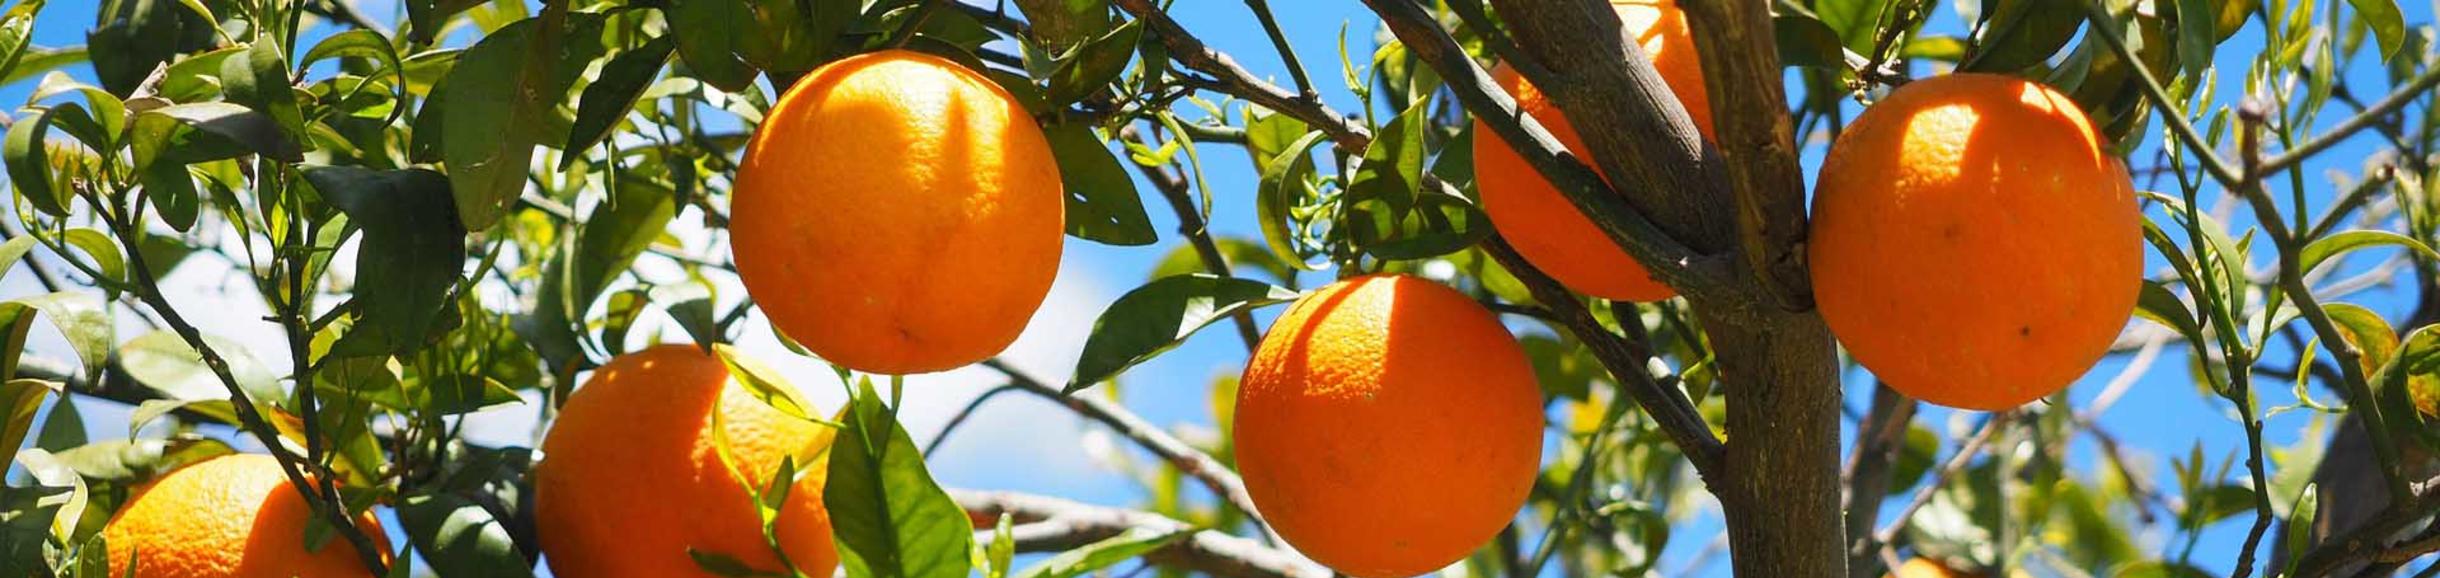 Oranges / pixabay.com